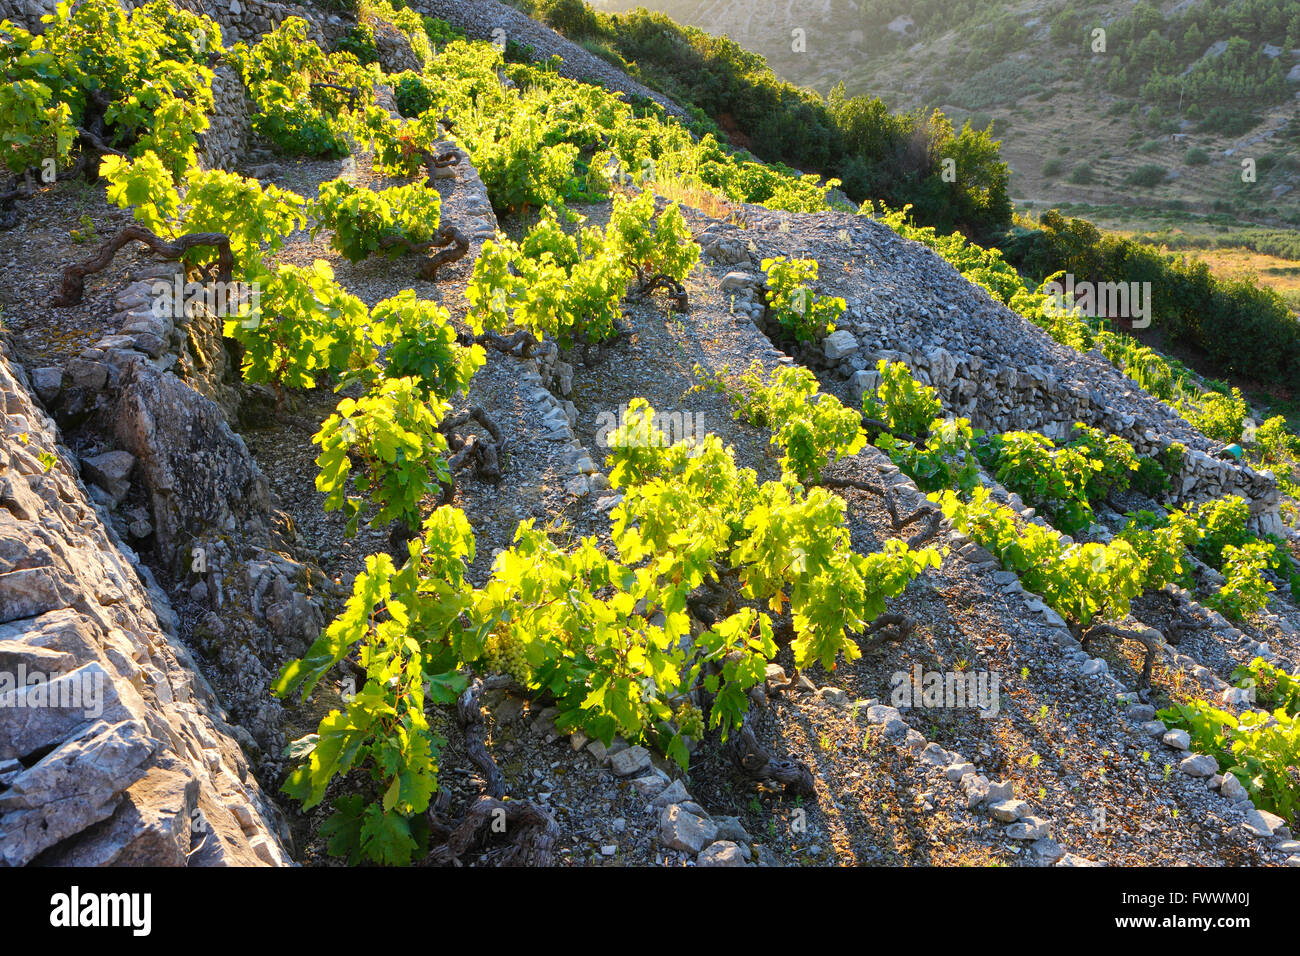 Vignoble sur une pente raide, île de Vis, Dalmatie - Croatie. Banque D'Images